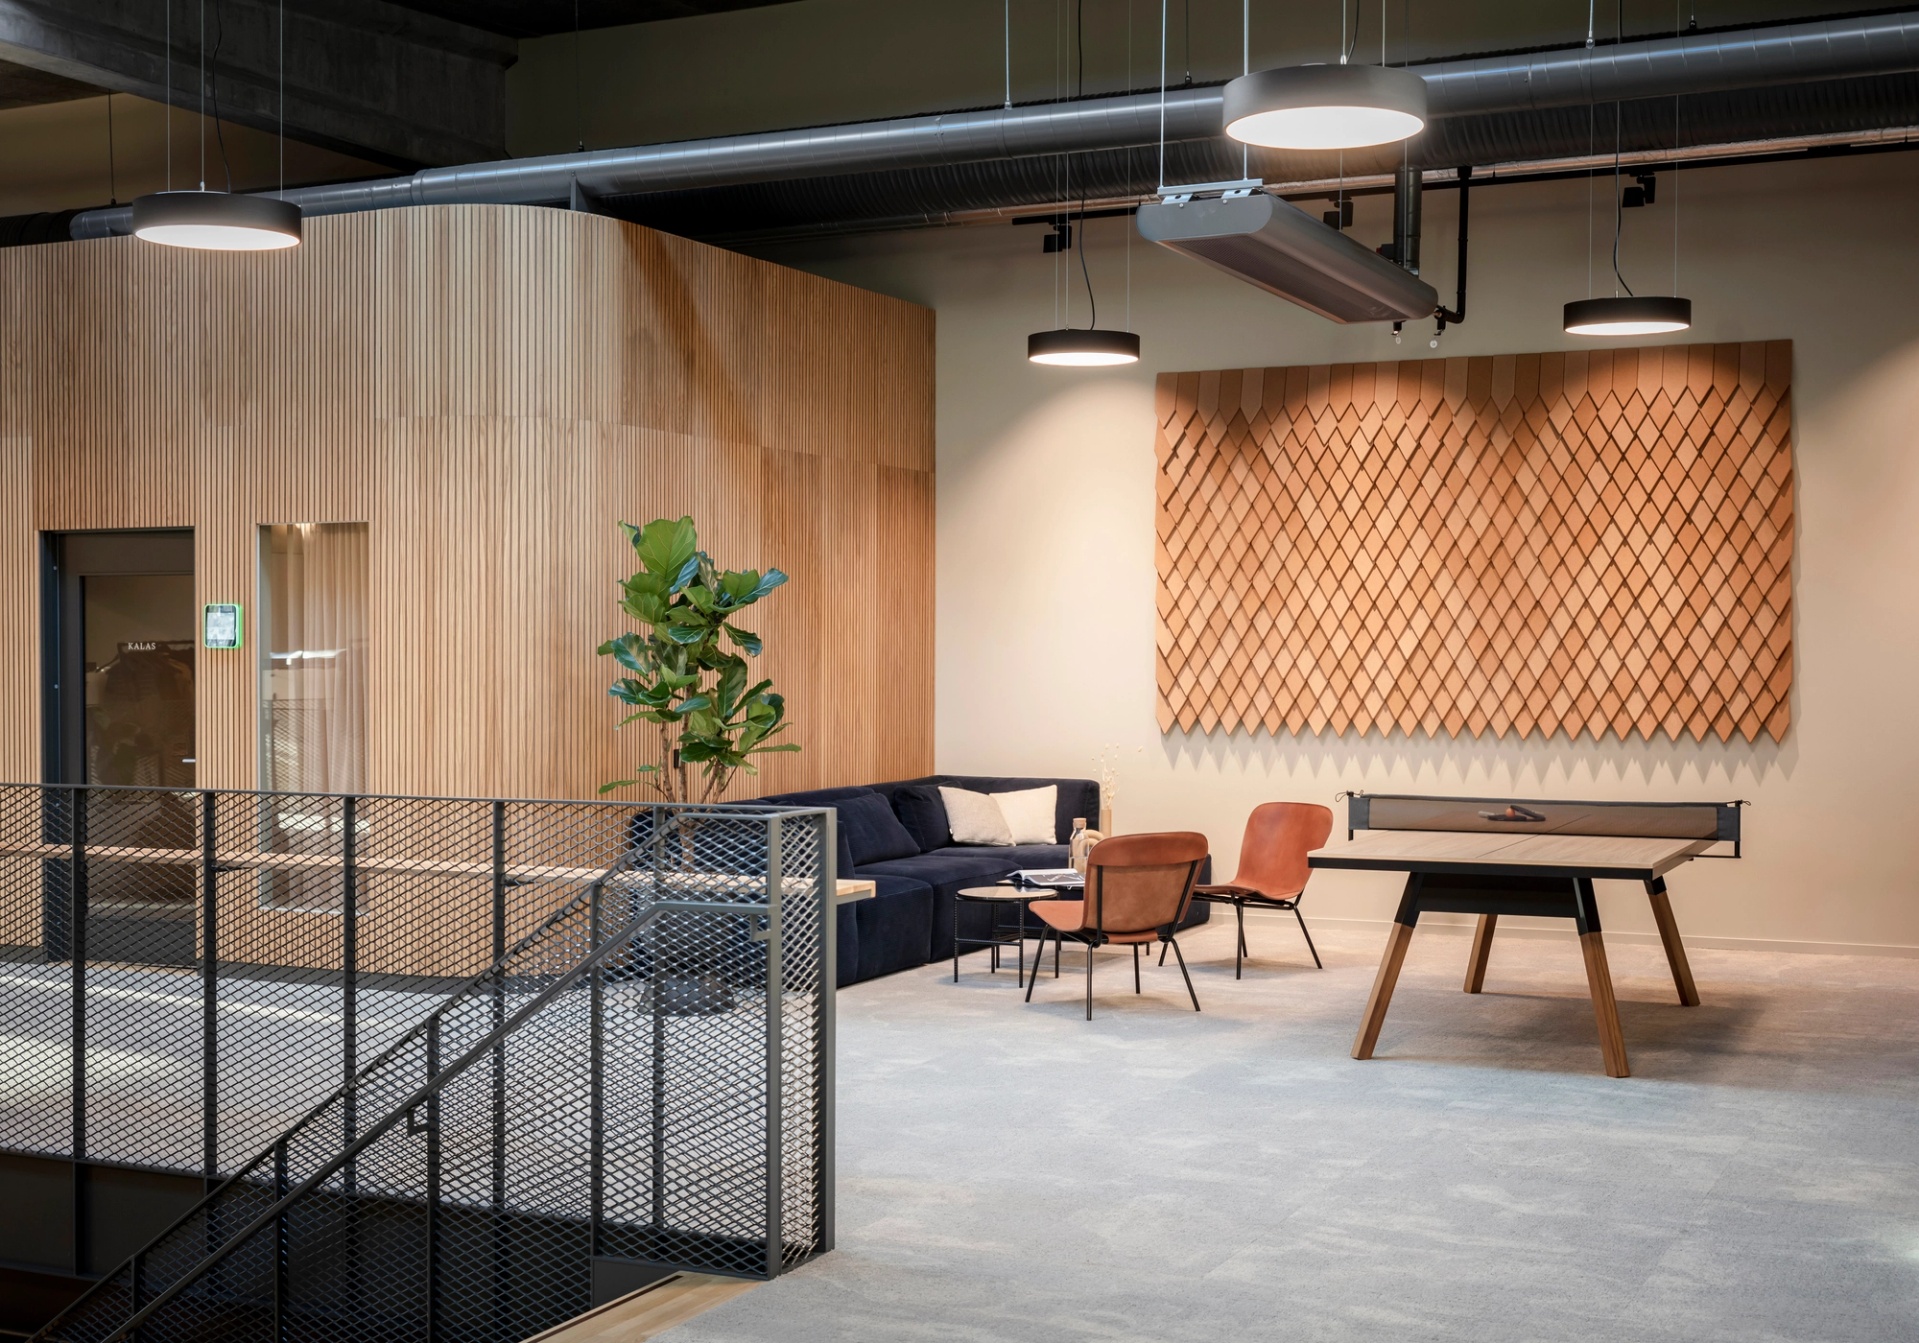 Corem kontor i Göteborg - konferensrum med runda väggar beklädda i träpaneler.